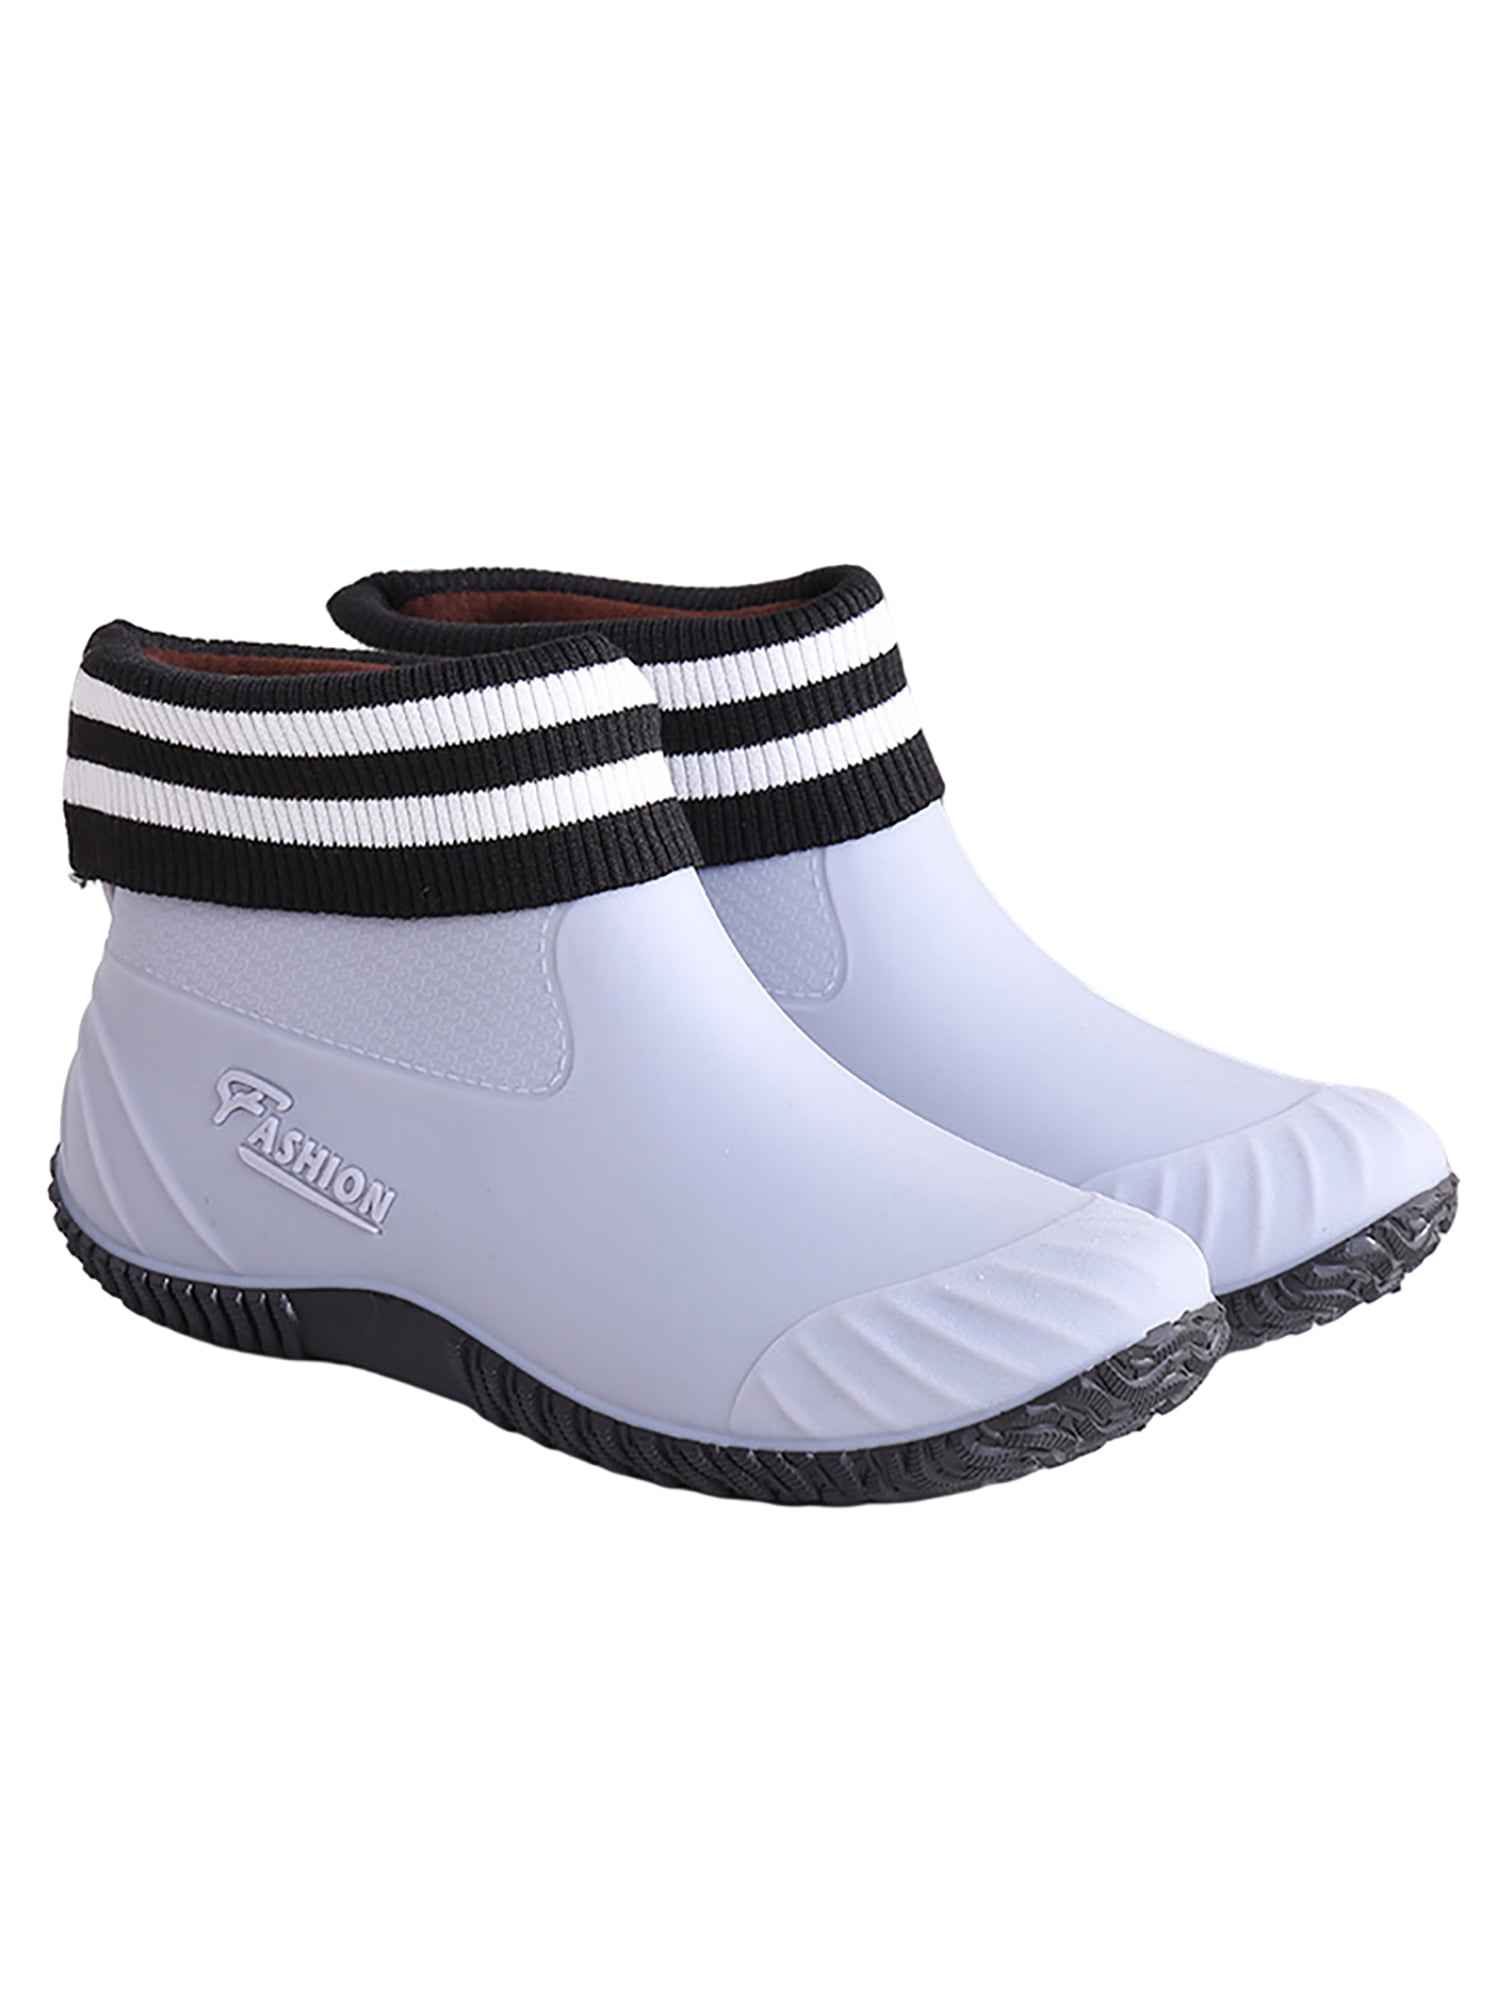 SIMANLAN Women's Ankle Rain Boots Waterproof Garden Shoes Anti-Slip ...